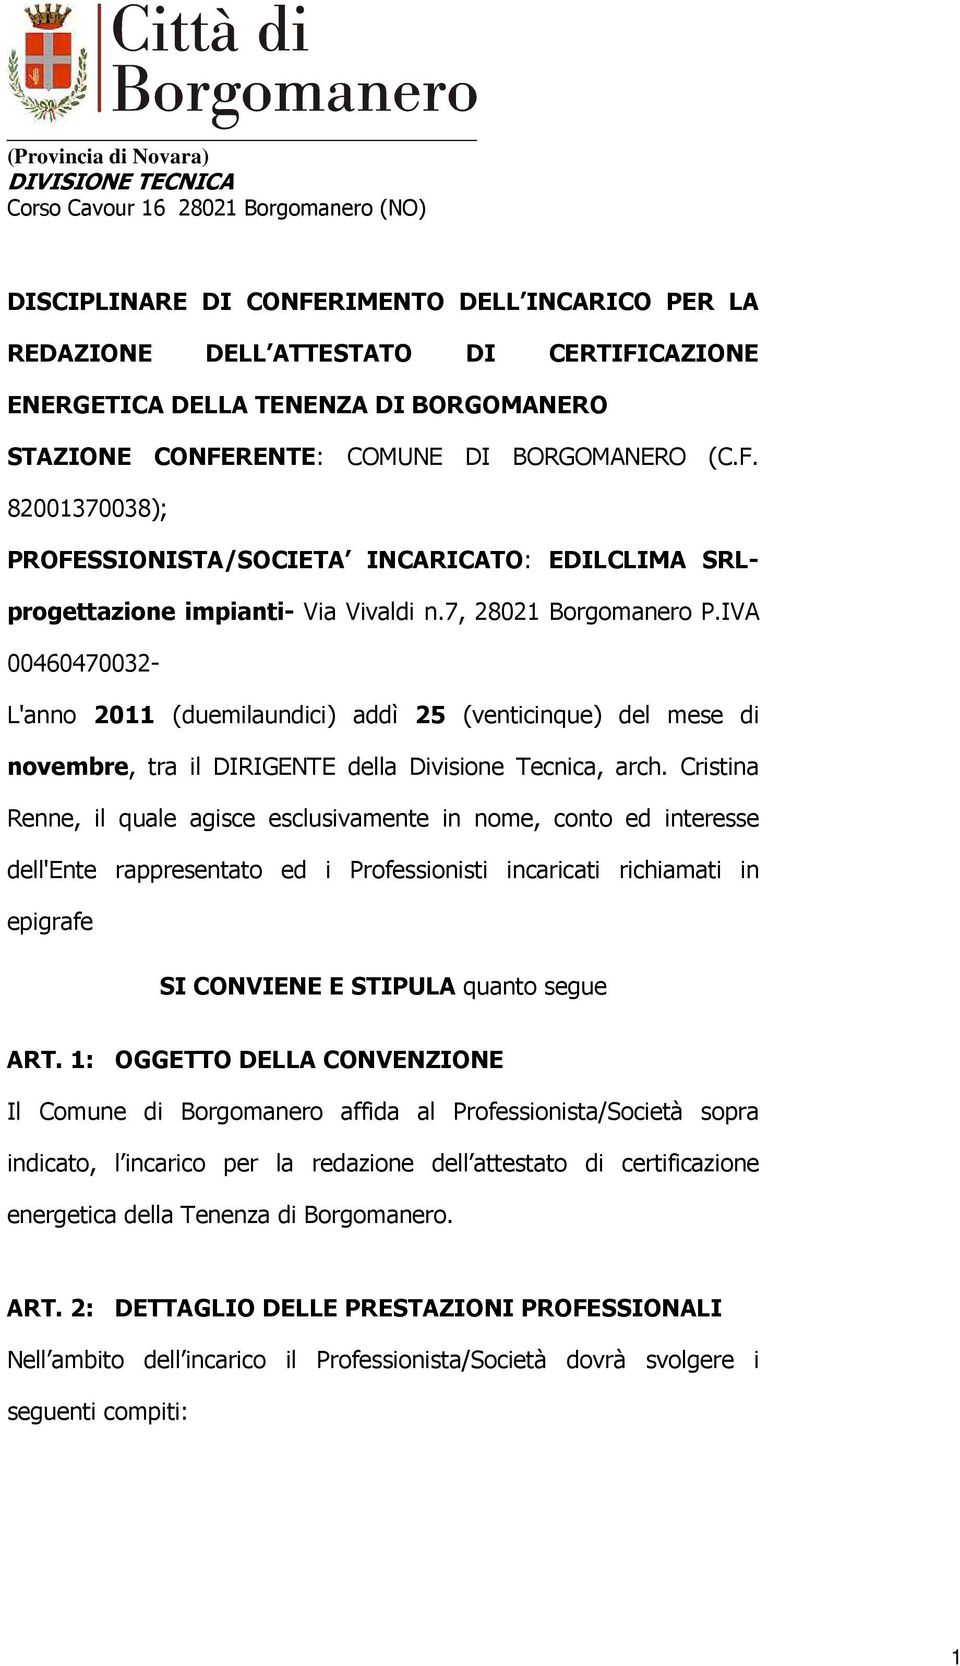 Cristina Renne, il quale agisce esclusivamente in nome, conto ed interesse dell'ente rappresentato ed i Professionisti incaricati richiamati in epigrafe SI CONVIENE E STIPULA quanto segue ART.